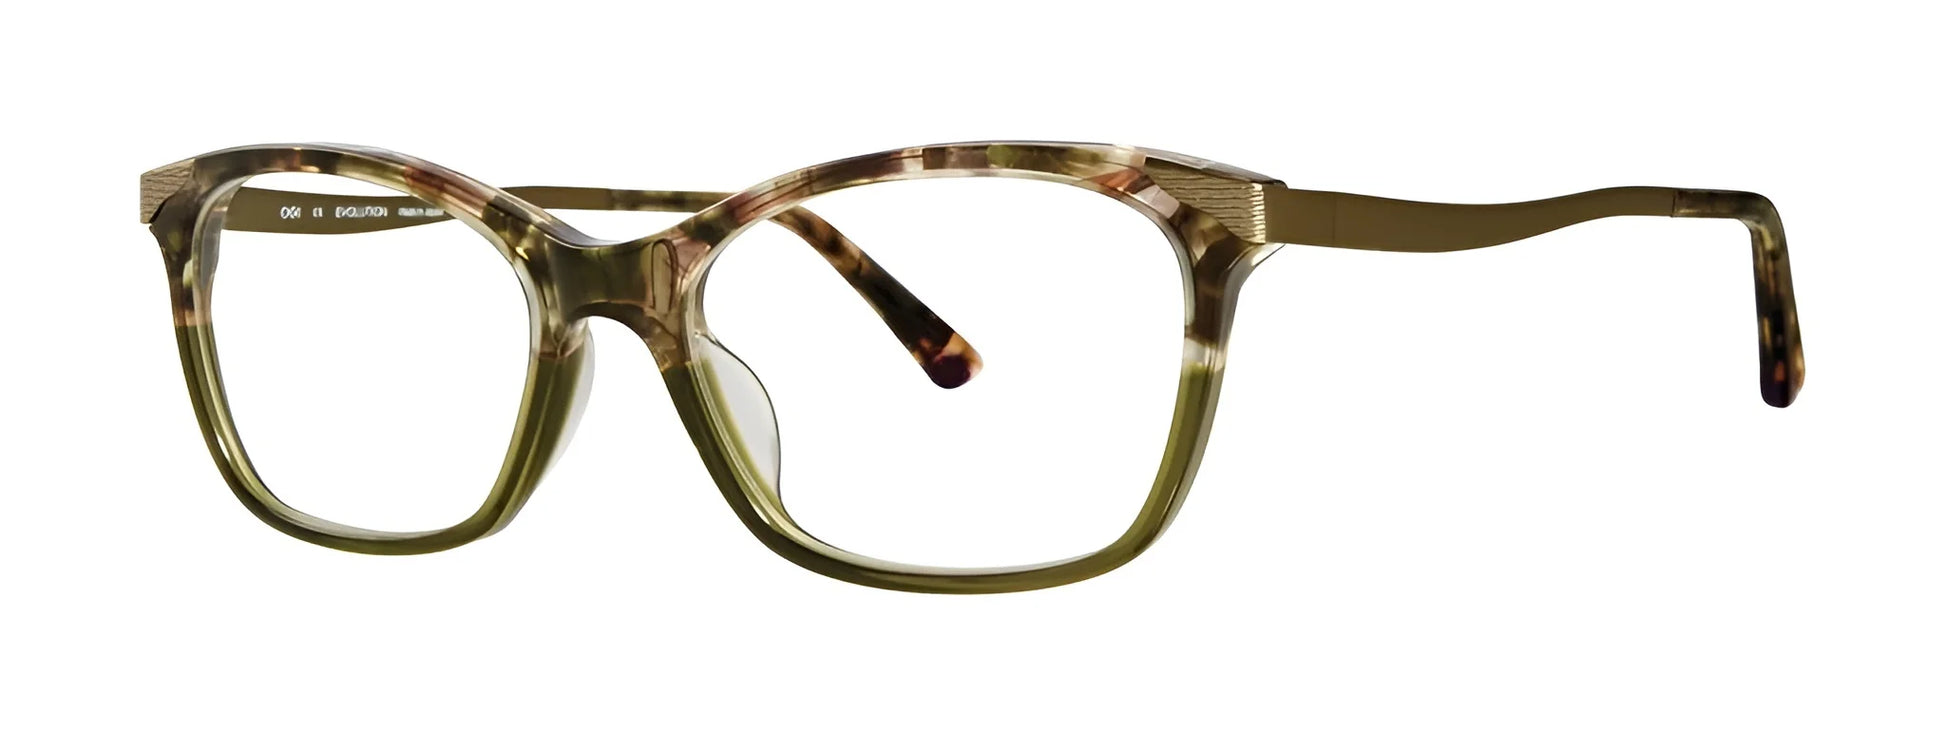 OGI 9245 Eyeglasses Willow Green Medley